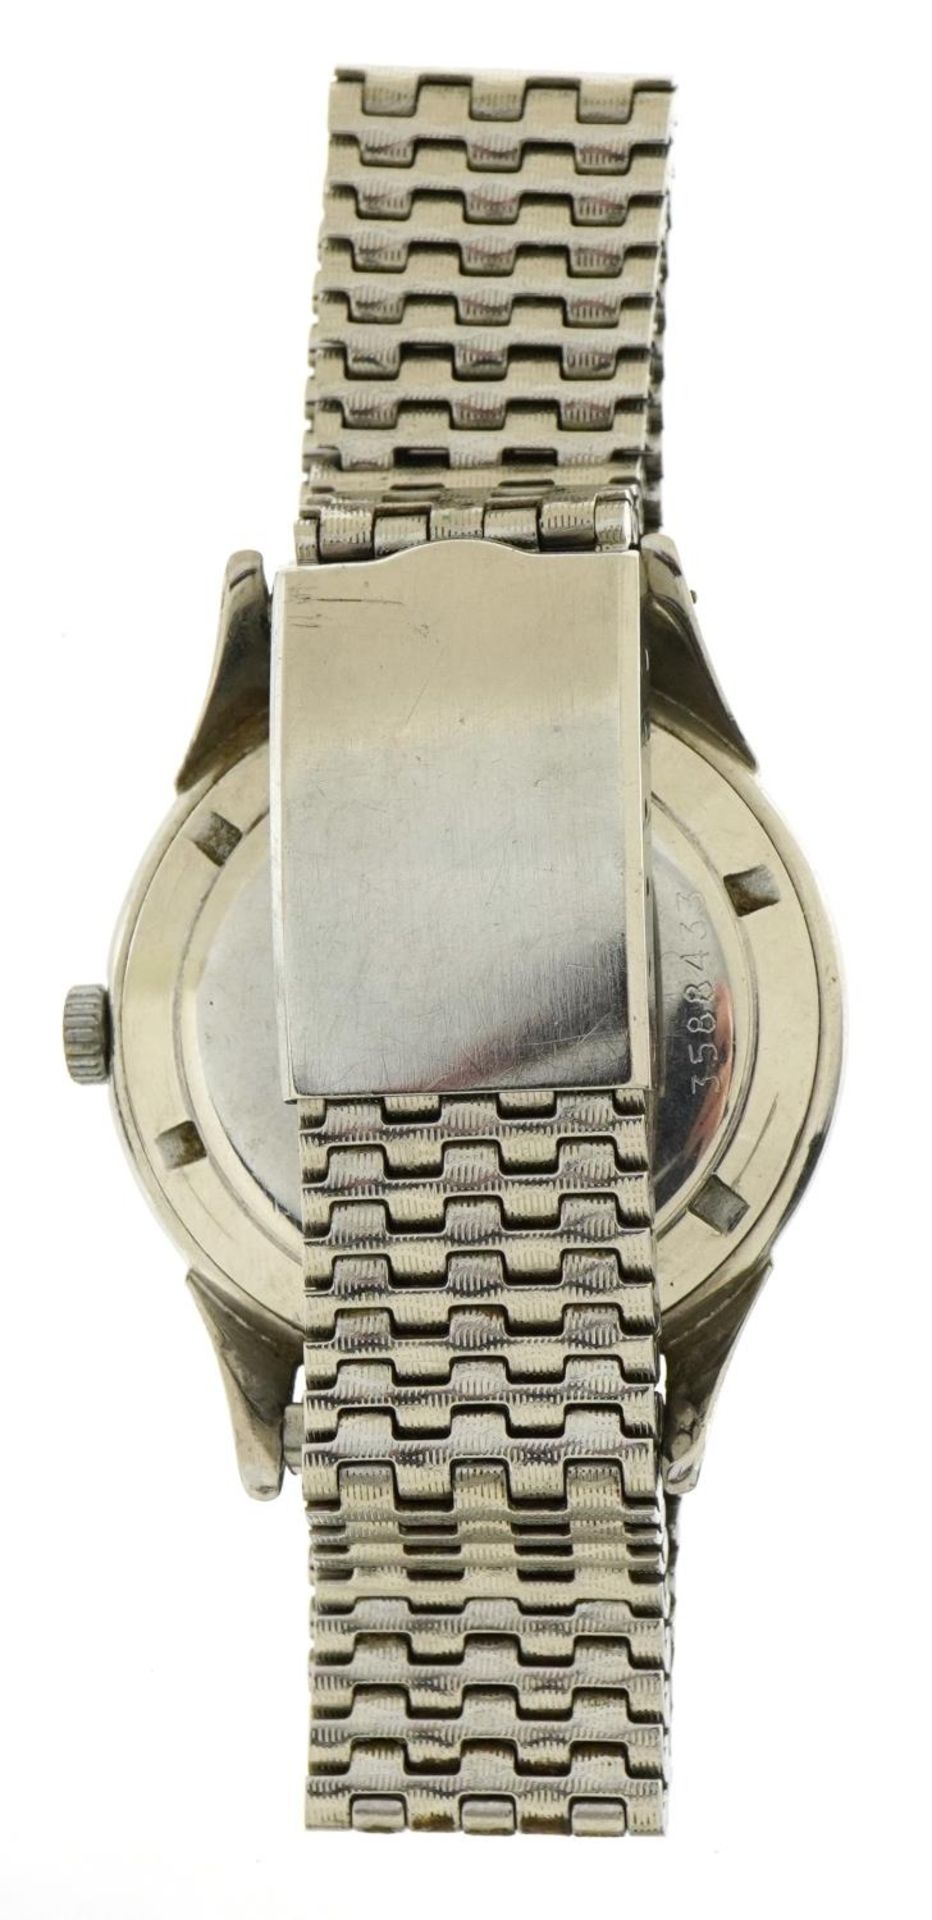 Gentlemen's Eterna Matic gentleman's automatic wristwatch, the case 36mm in diameter - Image 3 of 4